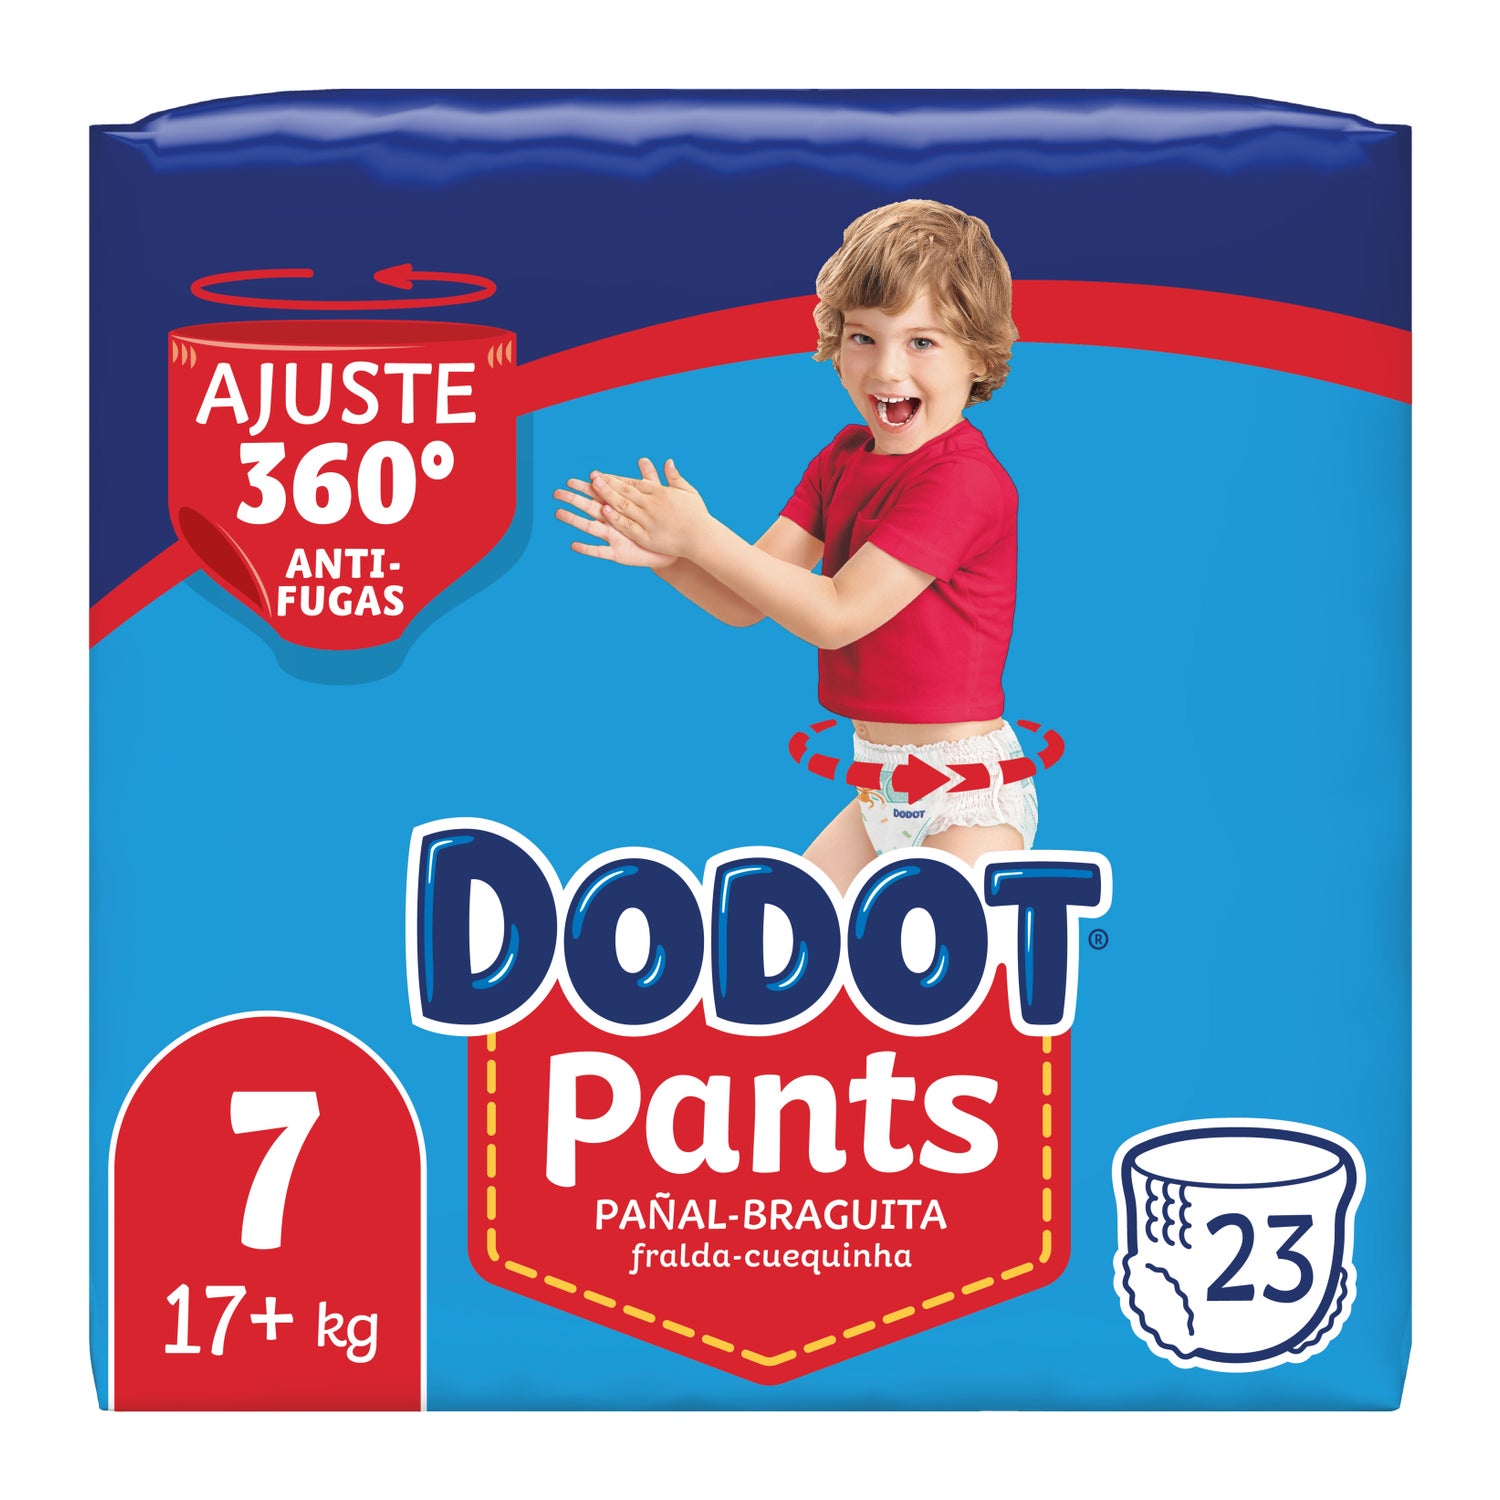 4 paquetes de Dodot Pants Pañal-Braguita Pañales Bebé, Talla 4 por